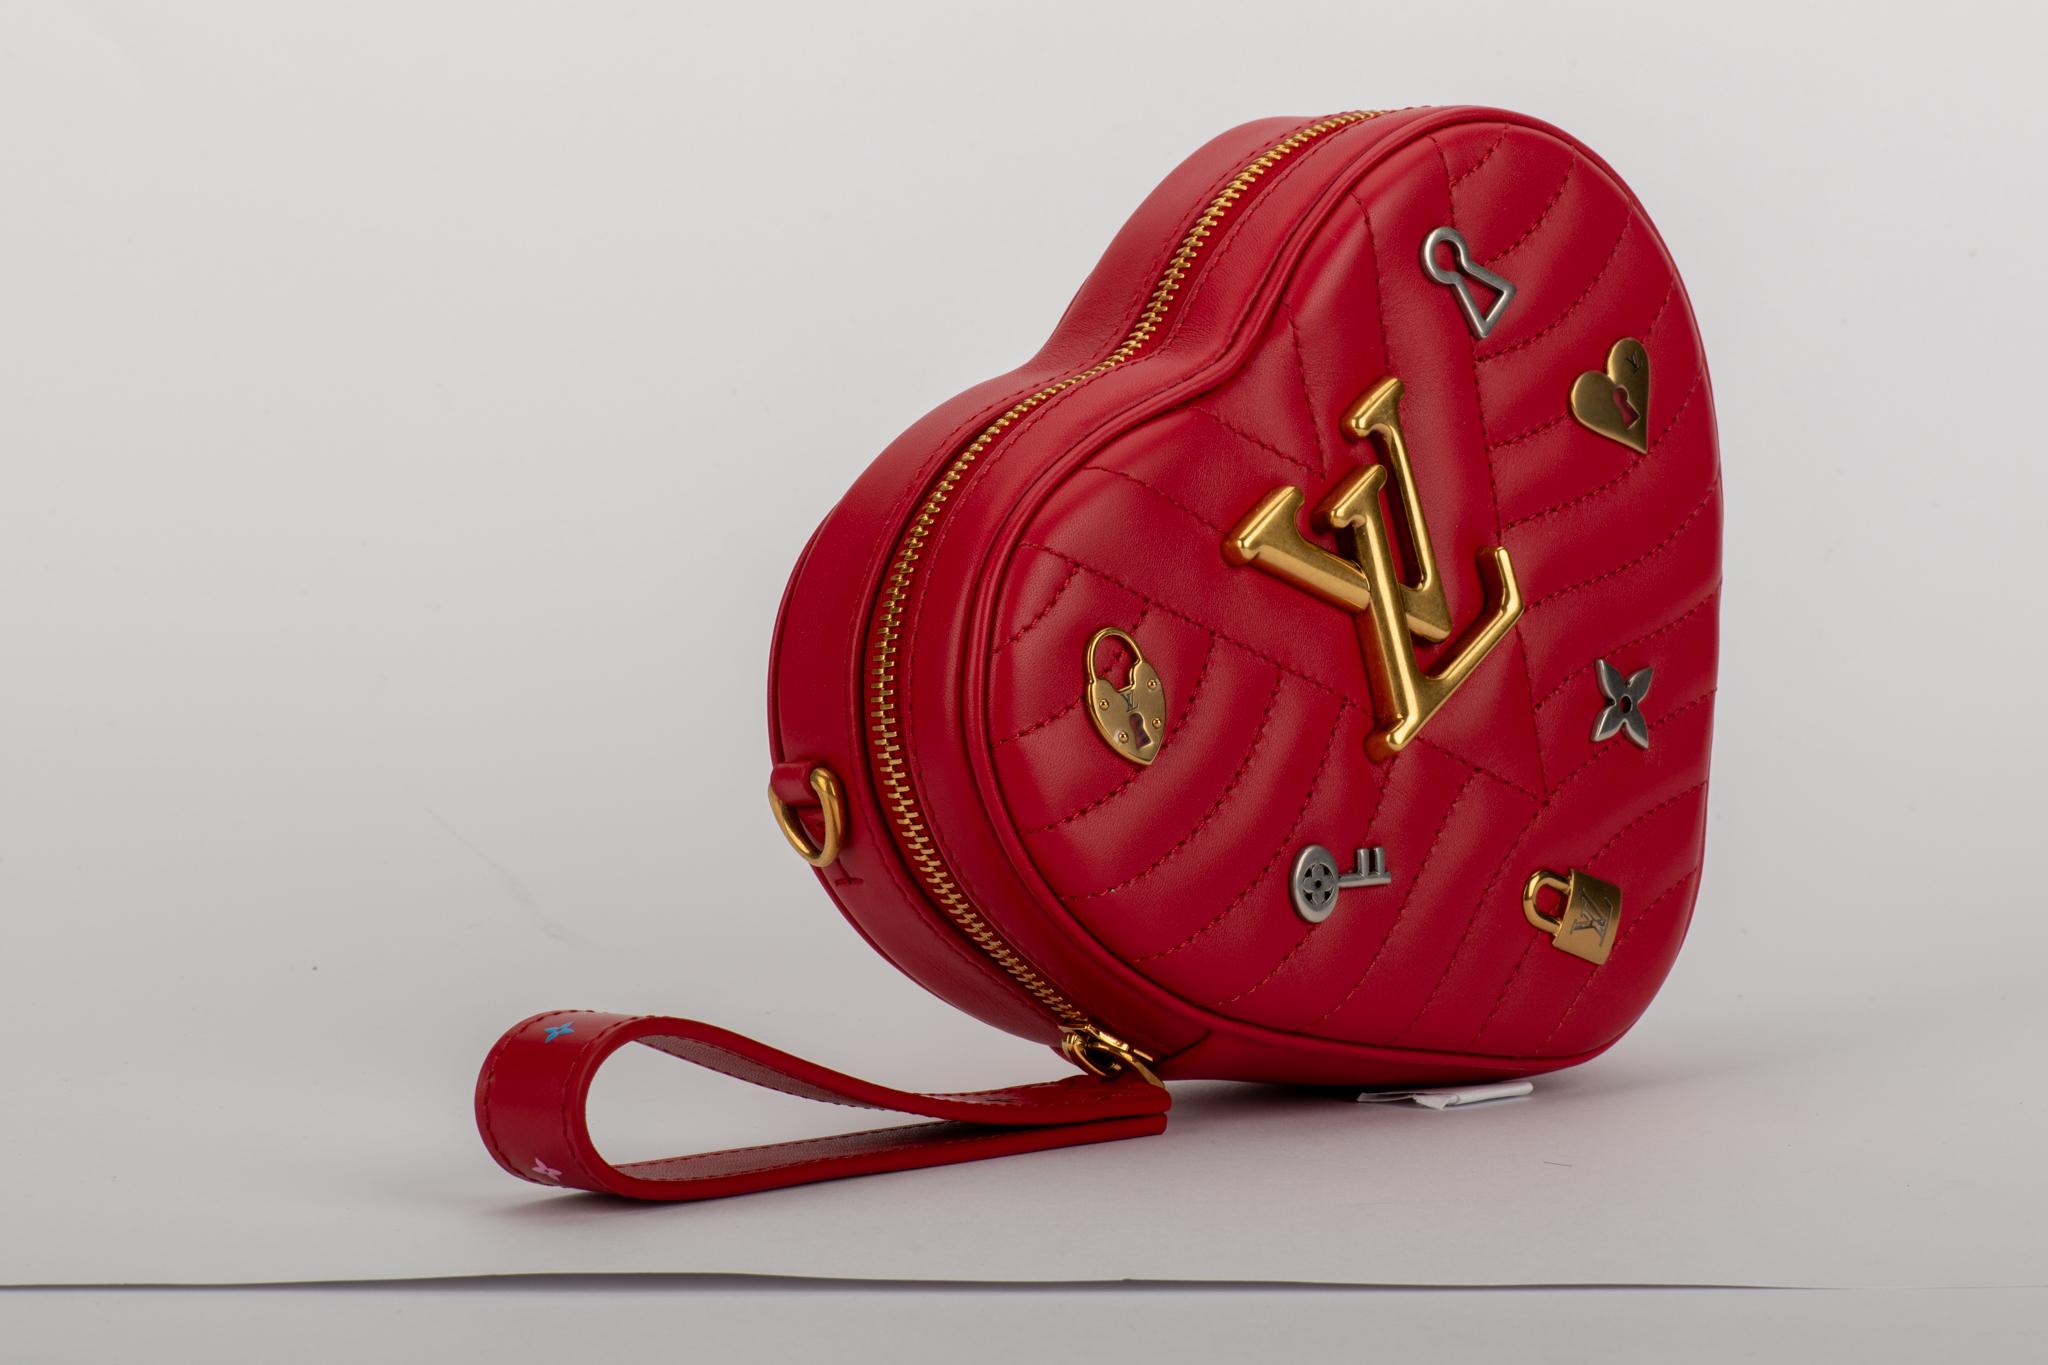 Louis Vuitton limitierte Auflage Herzform rote Ledertasche mit Logo Silber und Gold charms. Can wir als Clutch, Hüfttasche oder Cross Body Bag geboren. Schultergurt 20